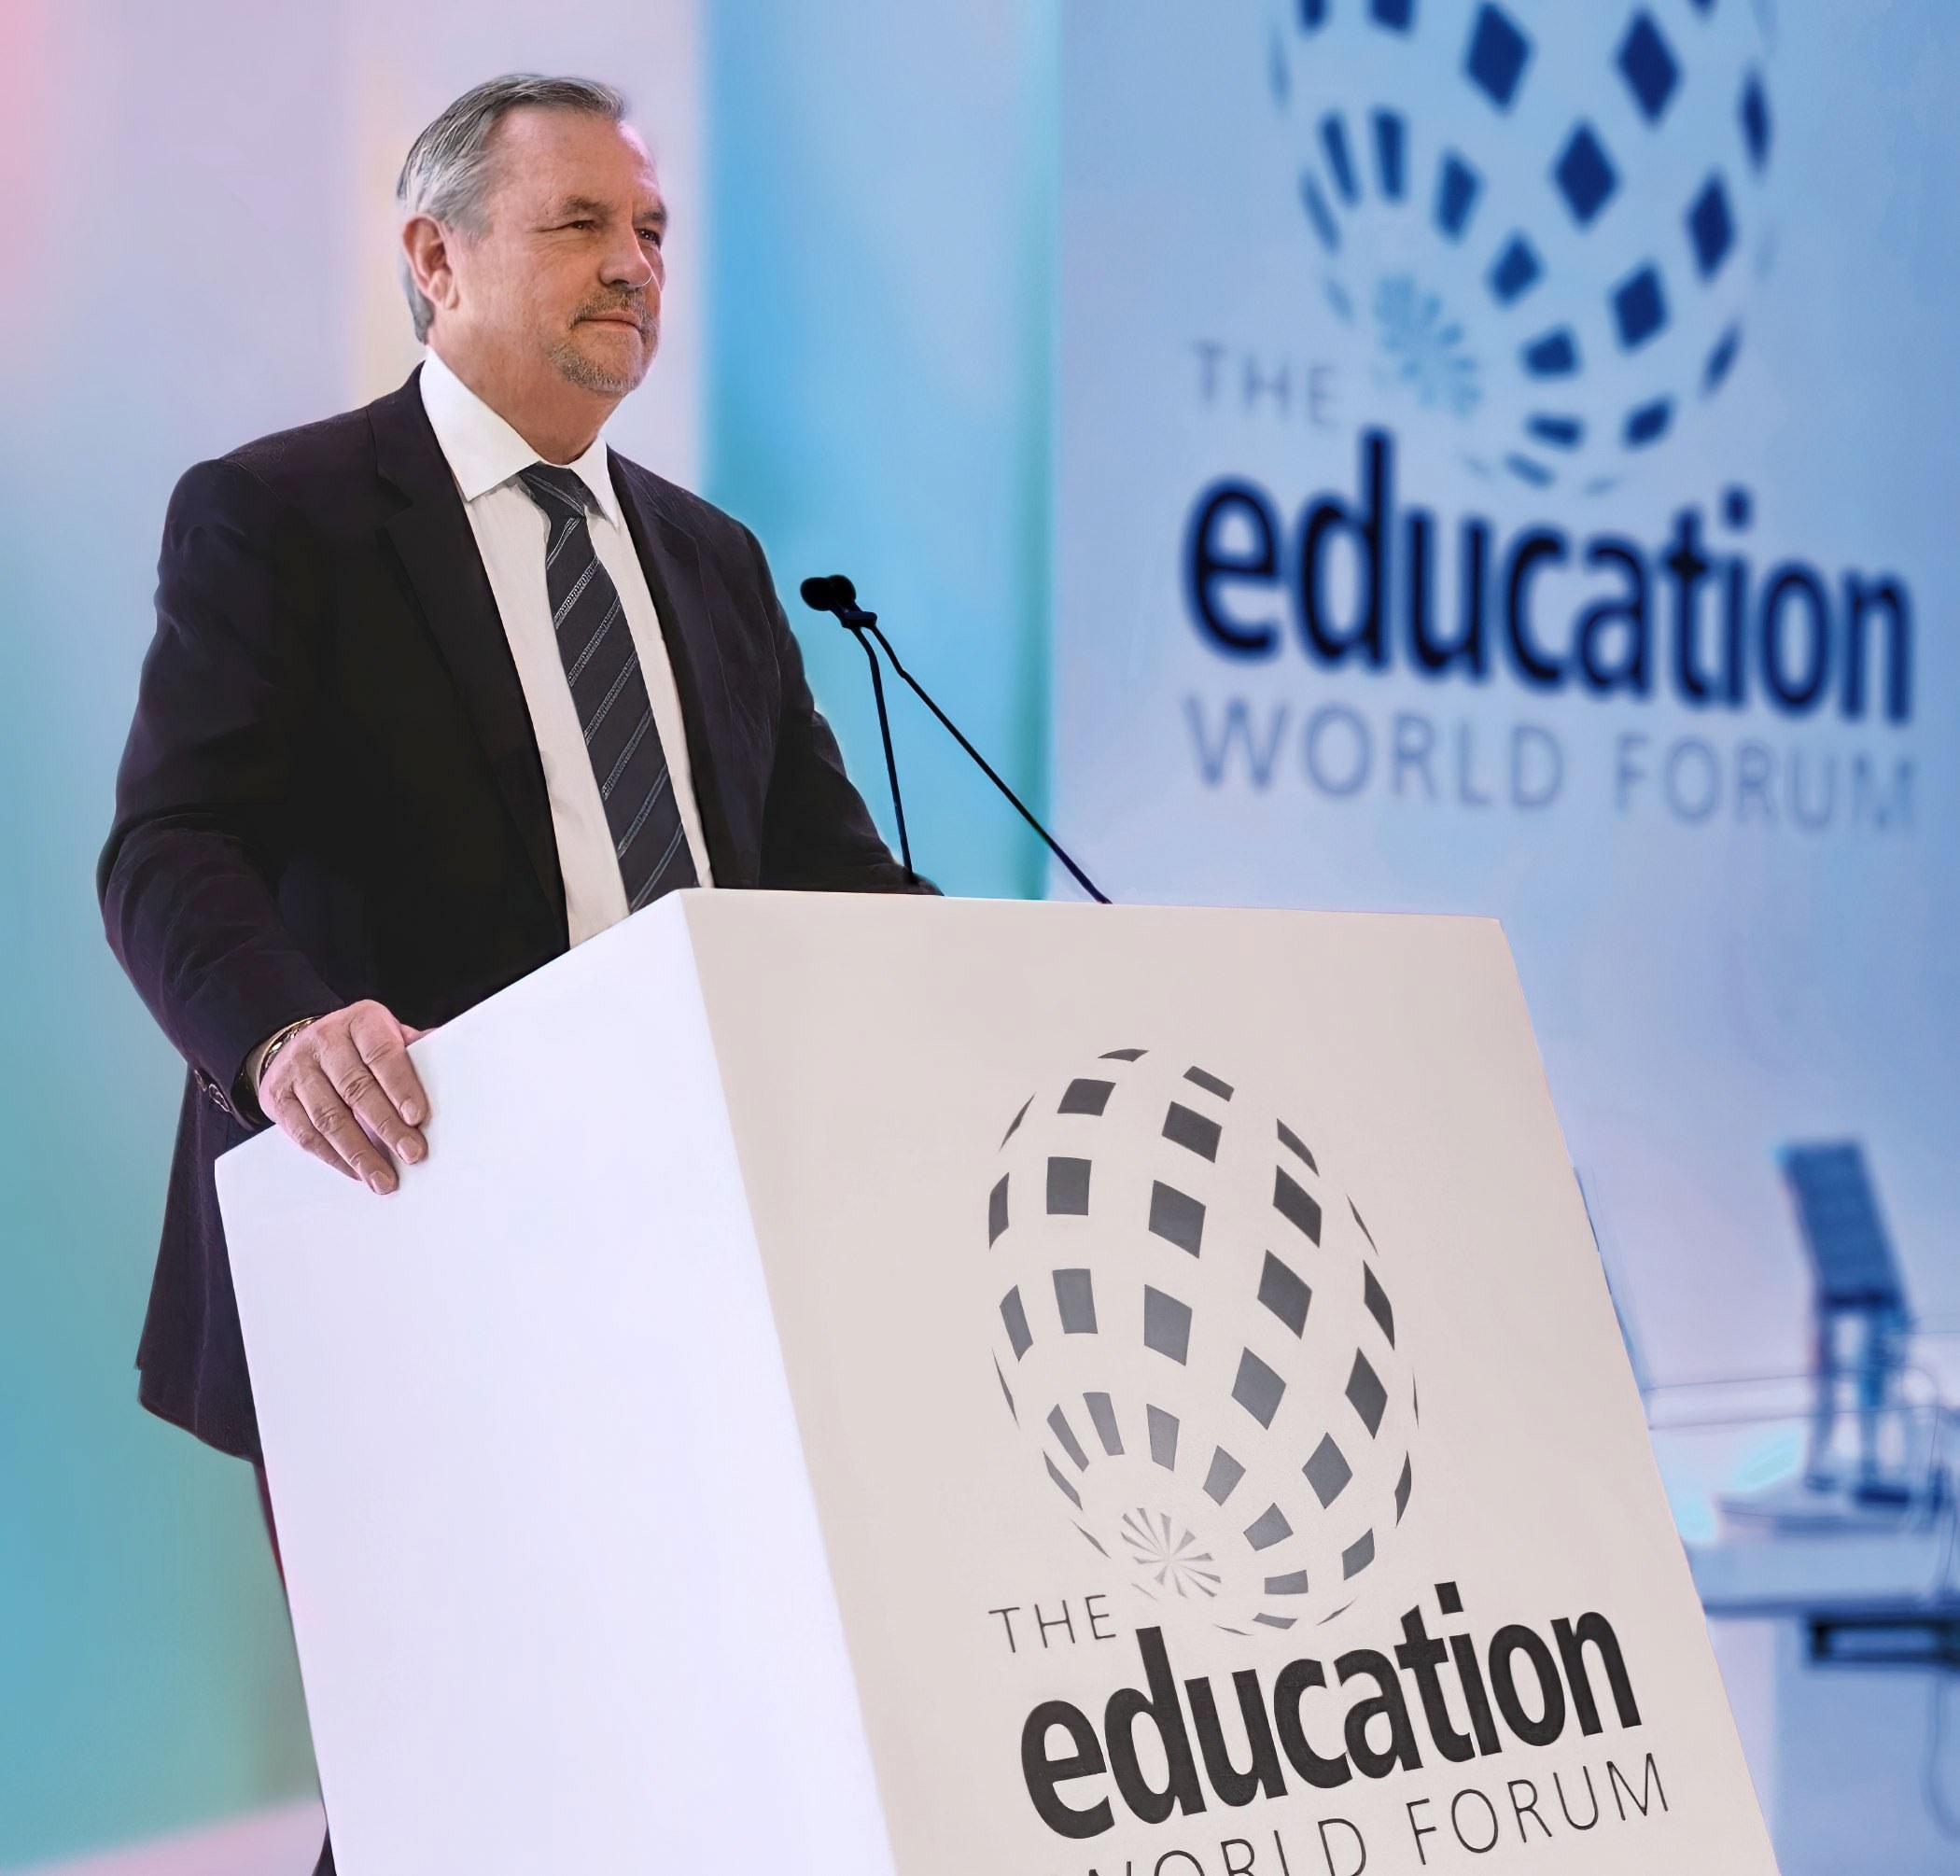 Doug Dohring speaking at Education World Forum